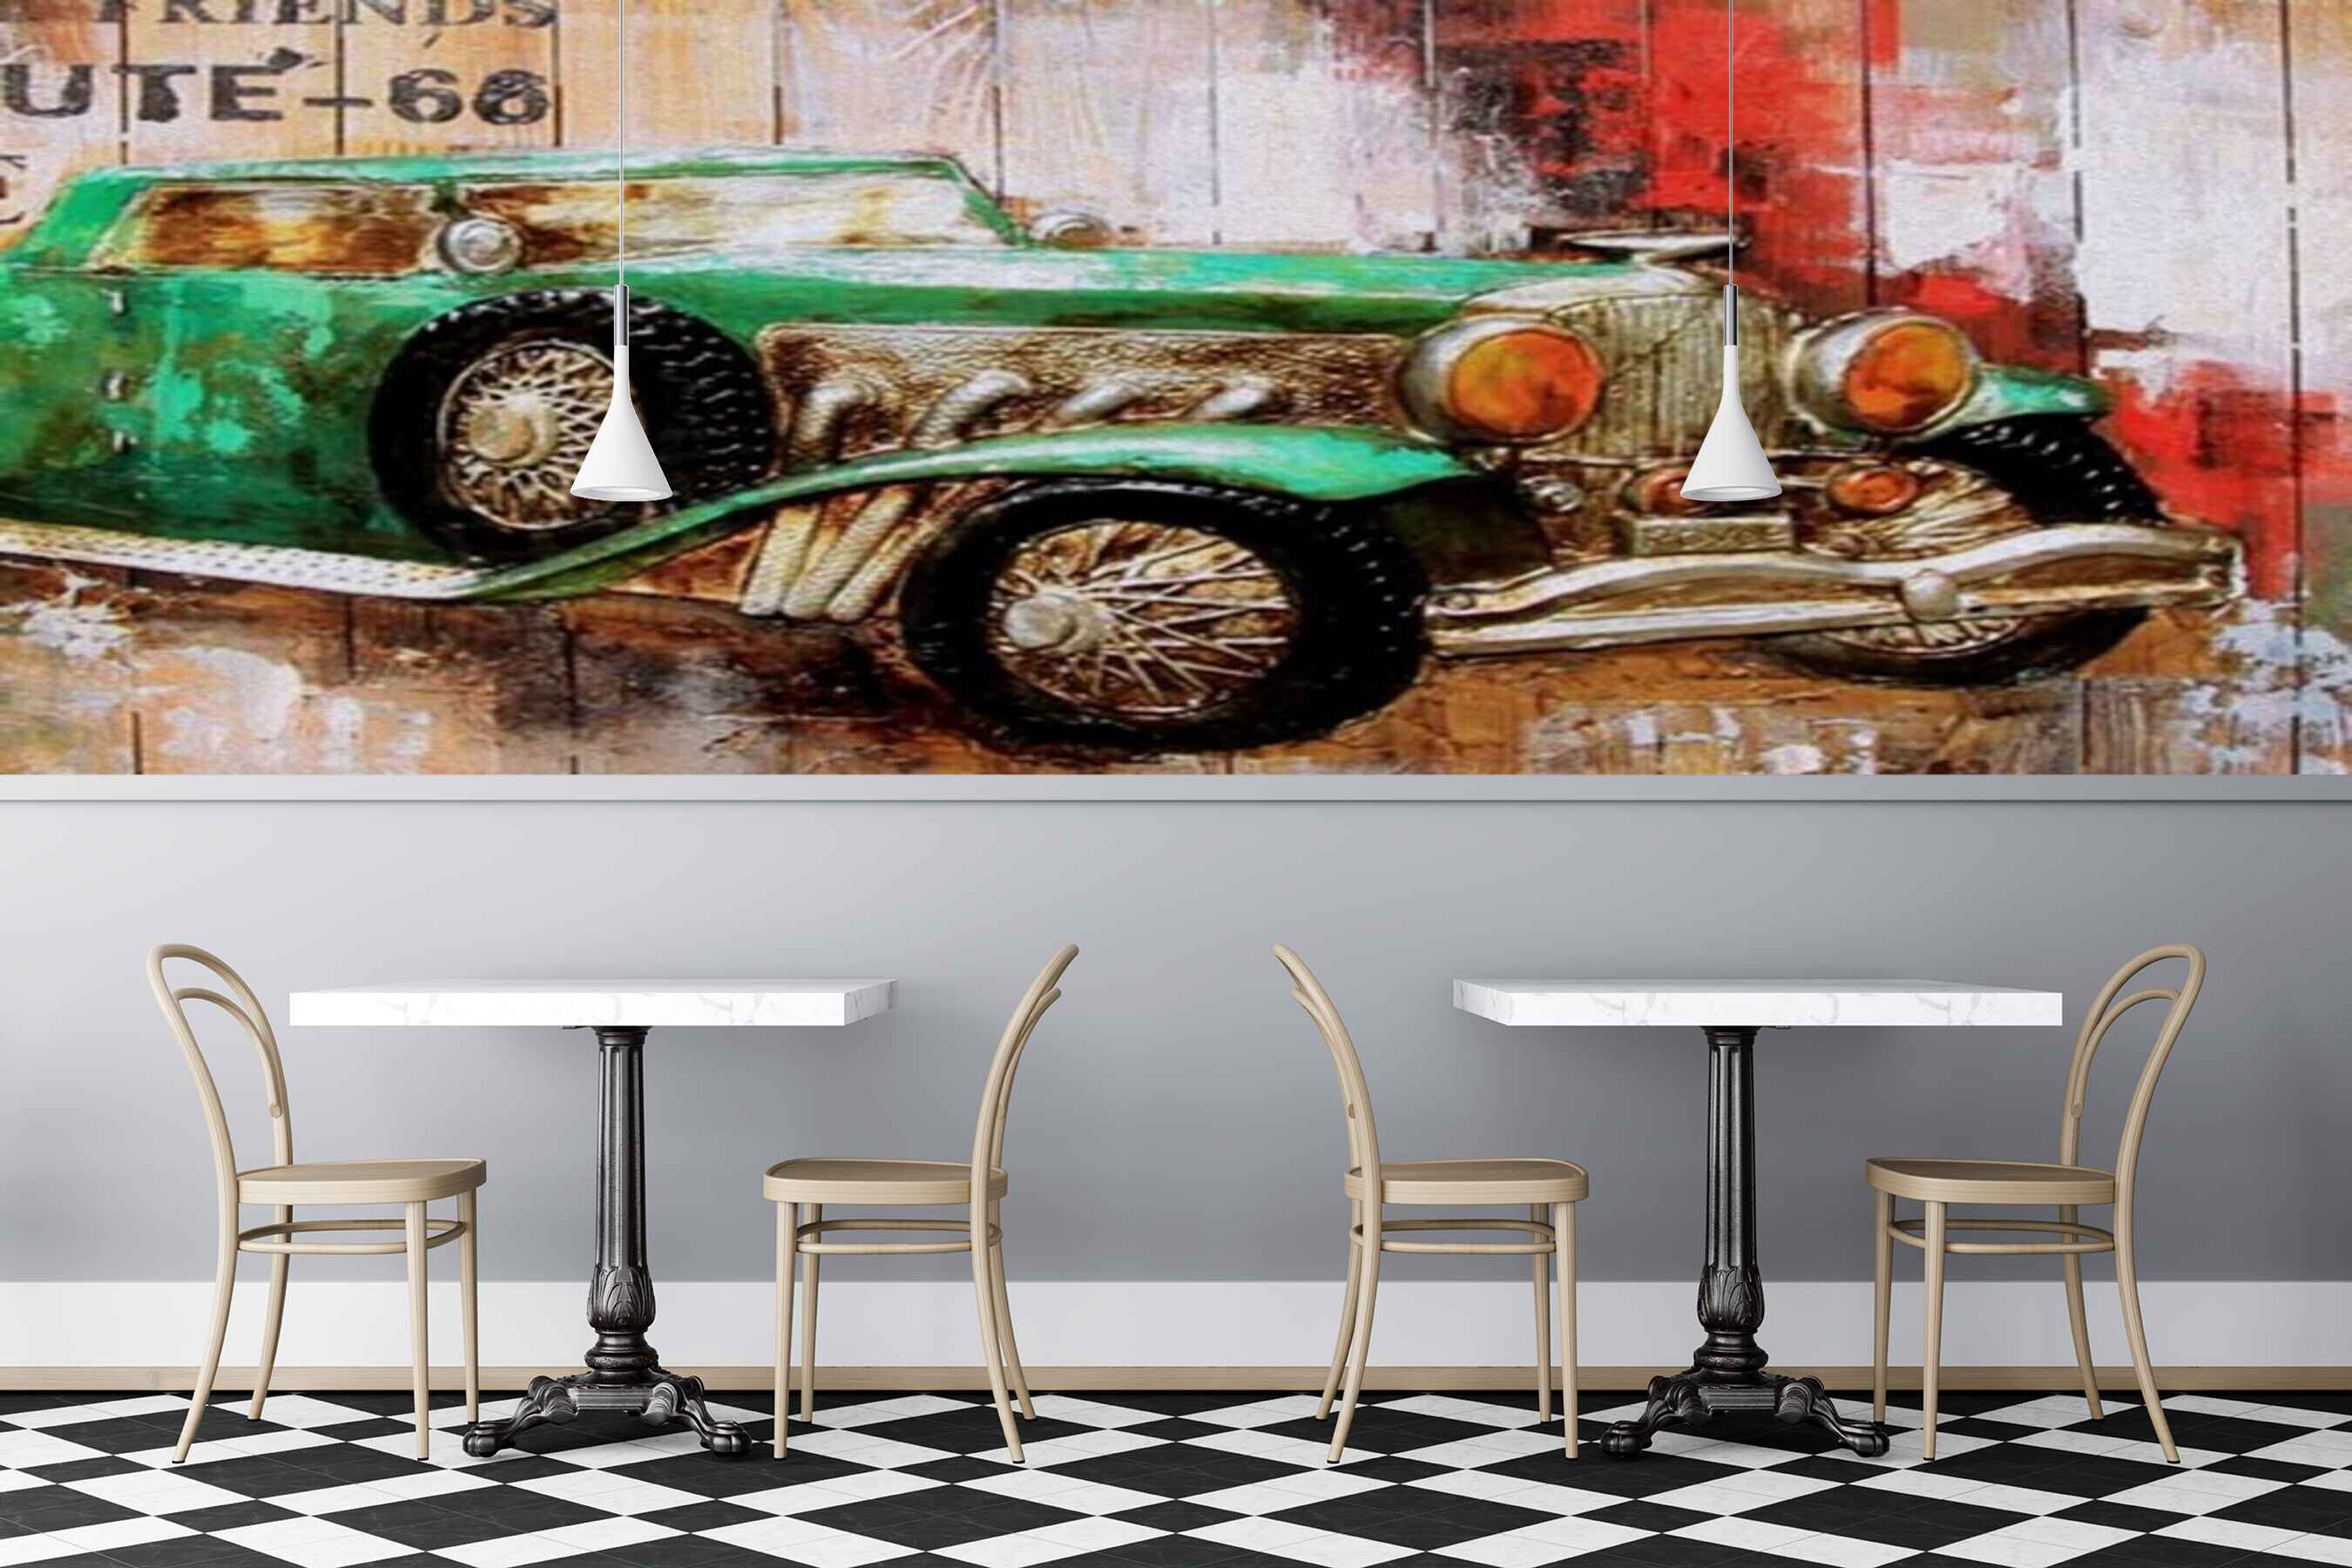 Avikalp MWZ3026 Green Car Wooden Board HD Wallpaper for Cafe Restaurant